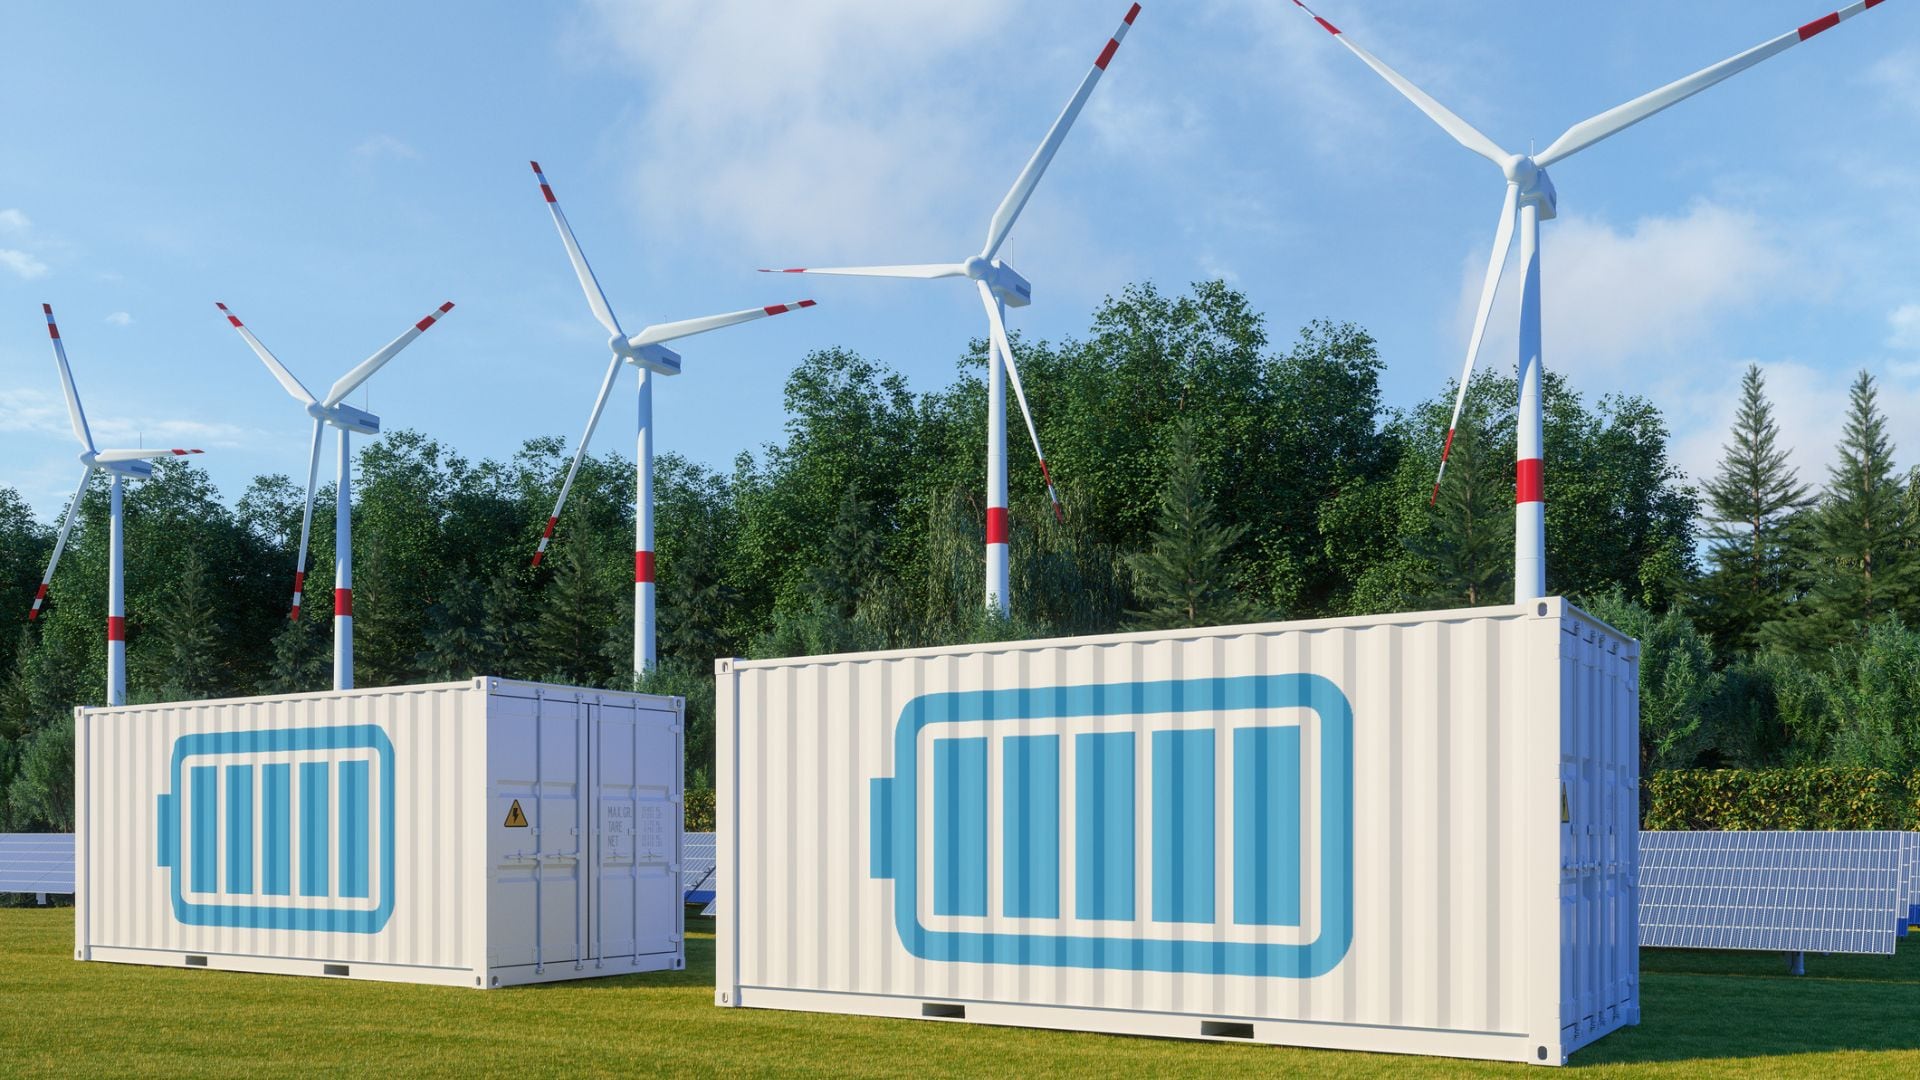 Sistema de almacenamiento de energía con panel solar, turbinas eólicas y contenedor de baterías de iones de litio (Getty)